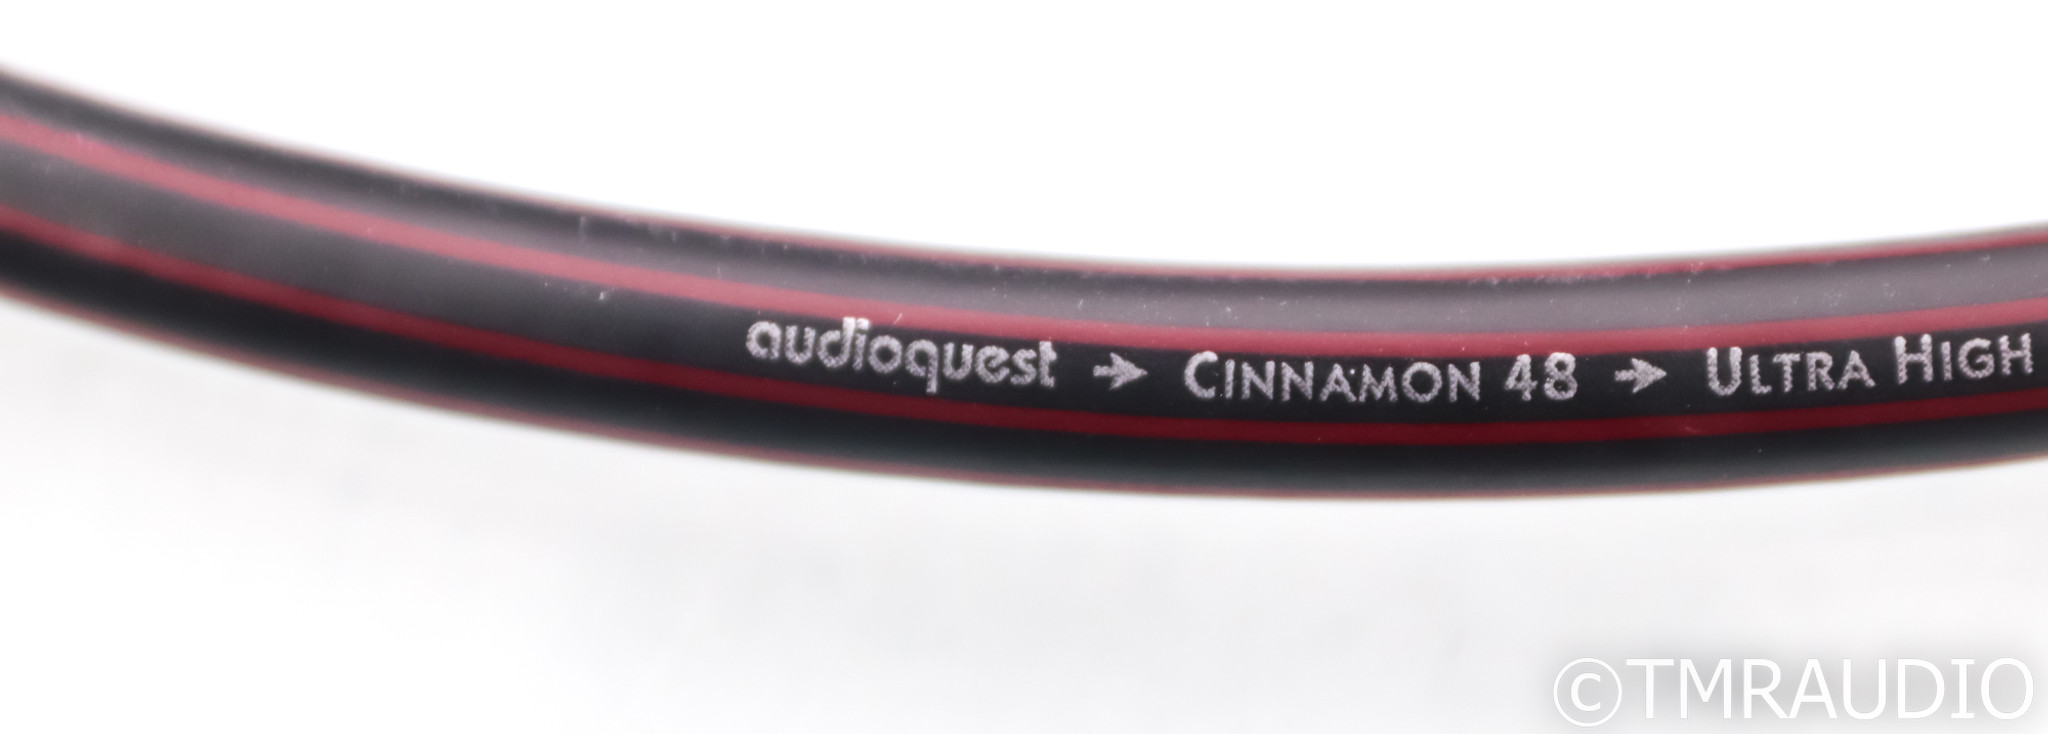 Câble HDMI Audioquest Cinnamon 18 - La boutique d'Eric